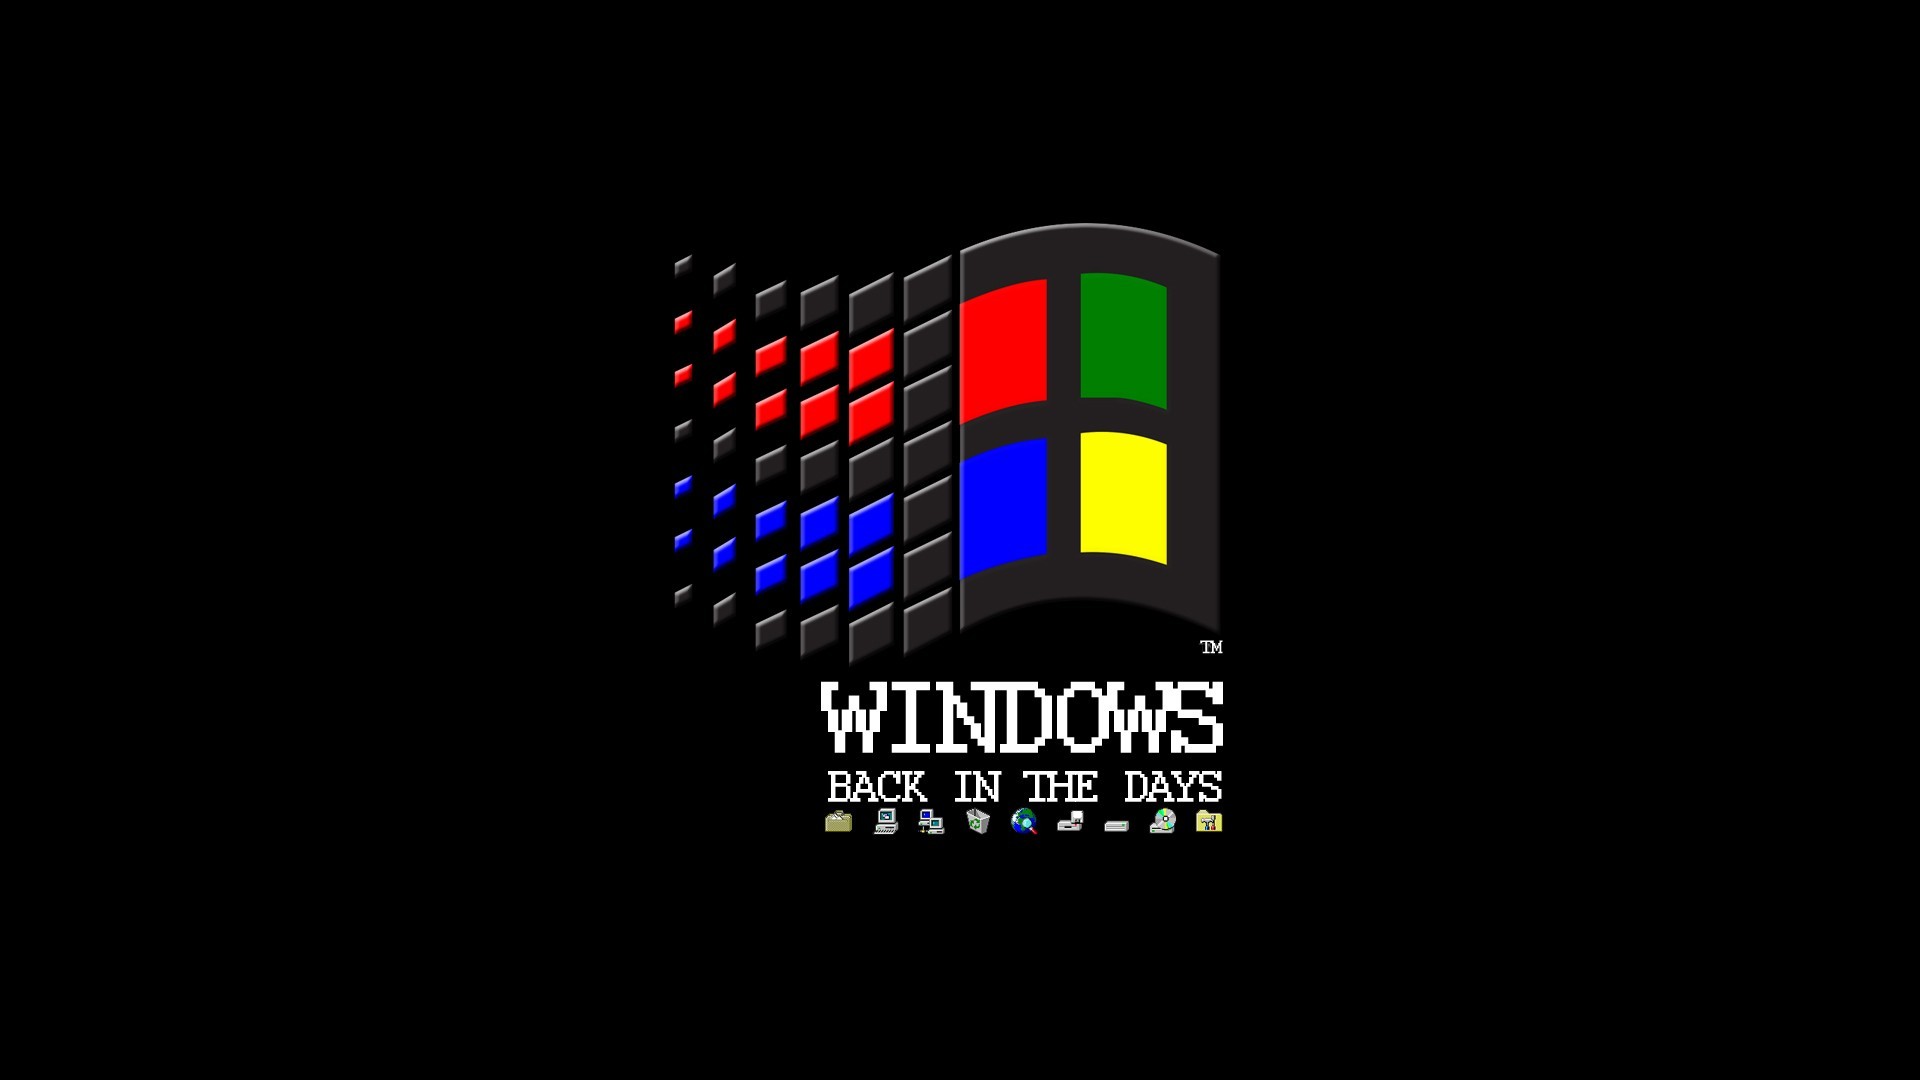 Microsoft Windows, Vintage, Logo, Black Background, Floppy Disk, MS DOS, Internet Wallpaper HD / Desktop and Mobile Background